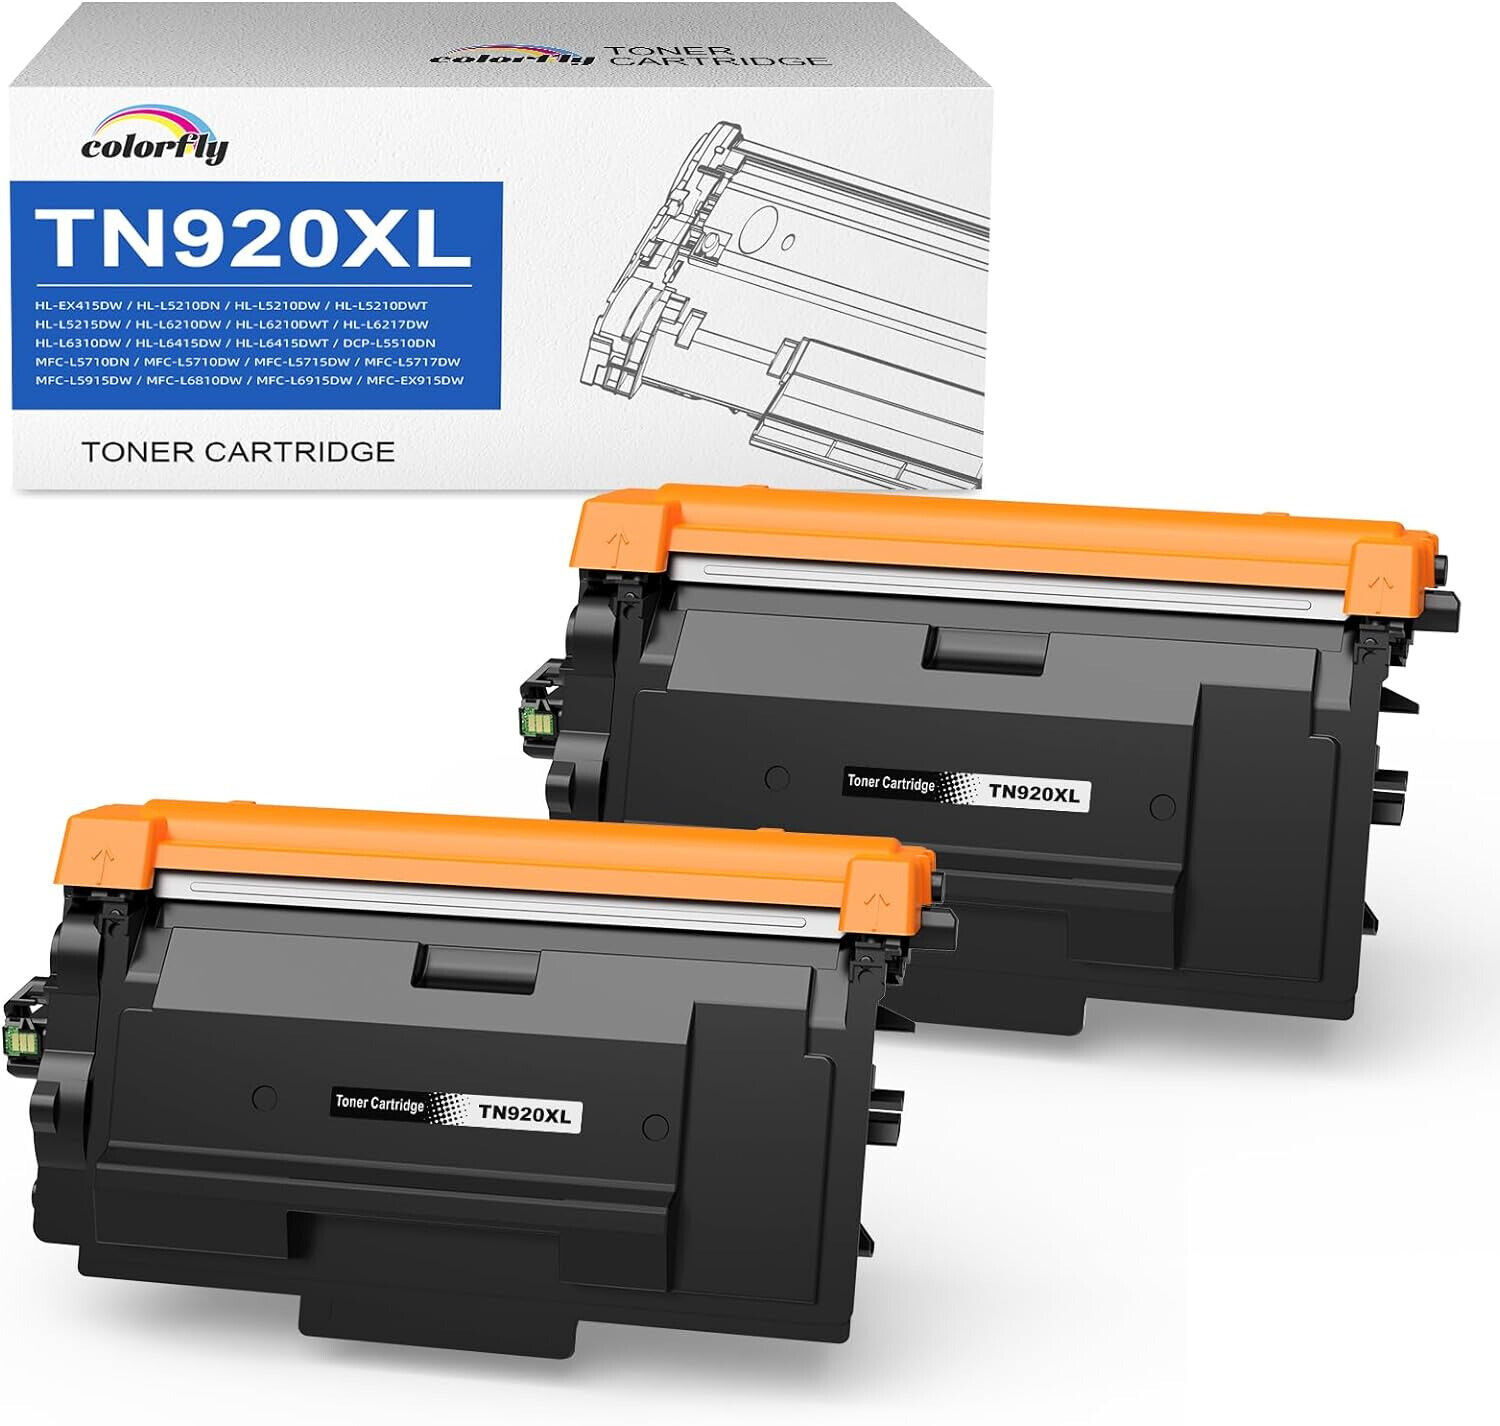 TN920XL TN920UXXL Toner Cartridge for Brother TN920 TN920XXL TN 920 920XL 920XXL